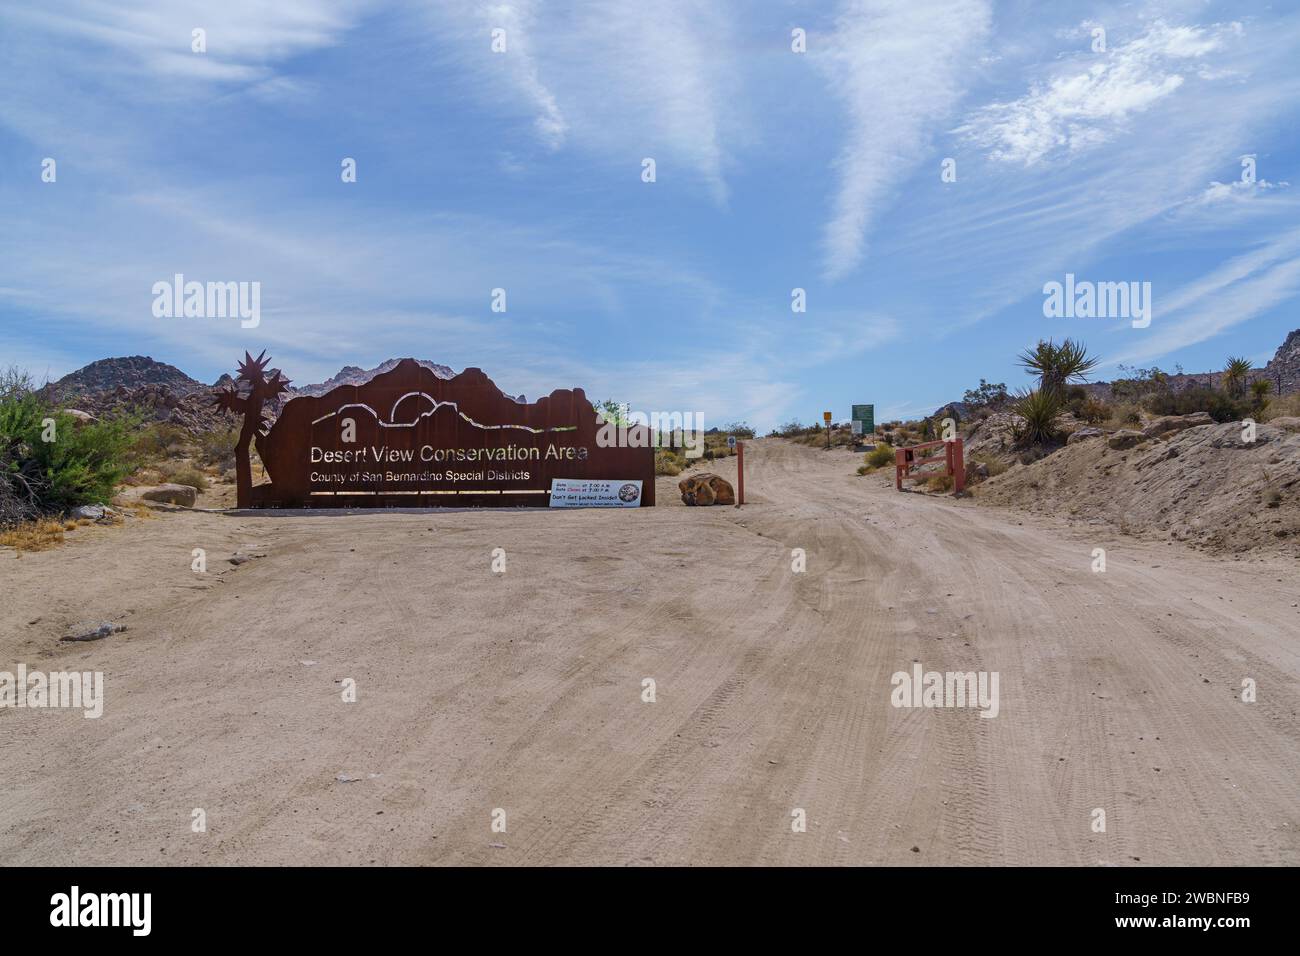 Ingresso e cartello per Joshua Tree, California, nell'area protetta con vista sul deserto Foto Stock